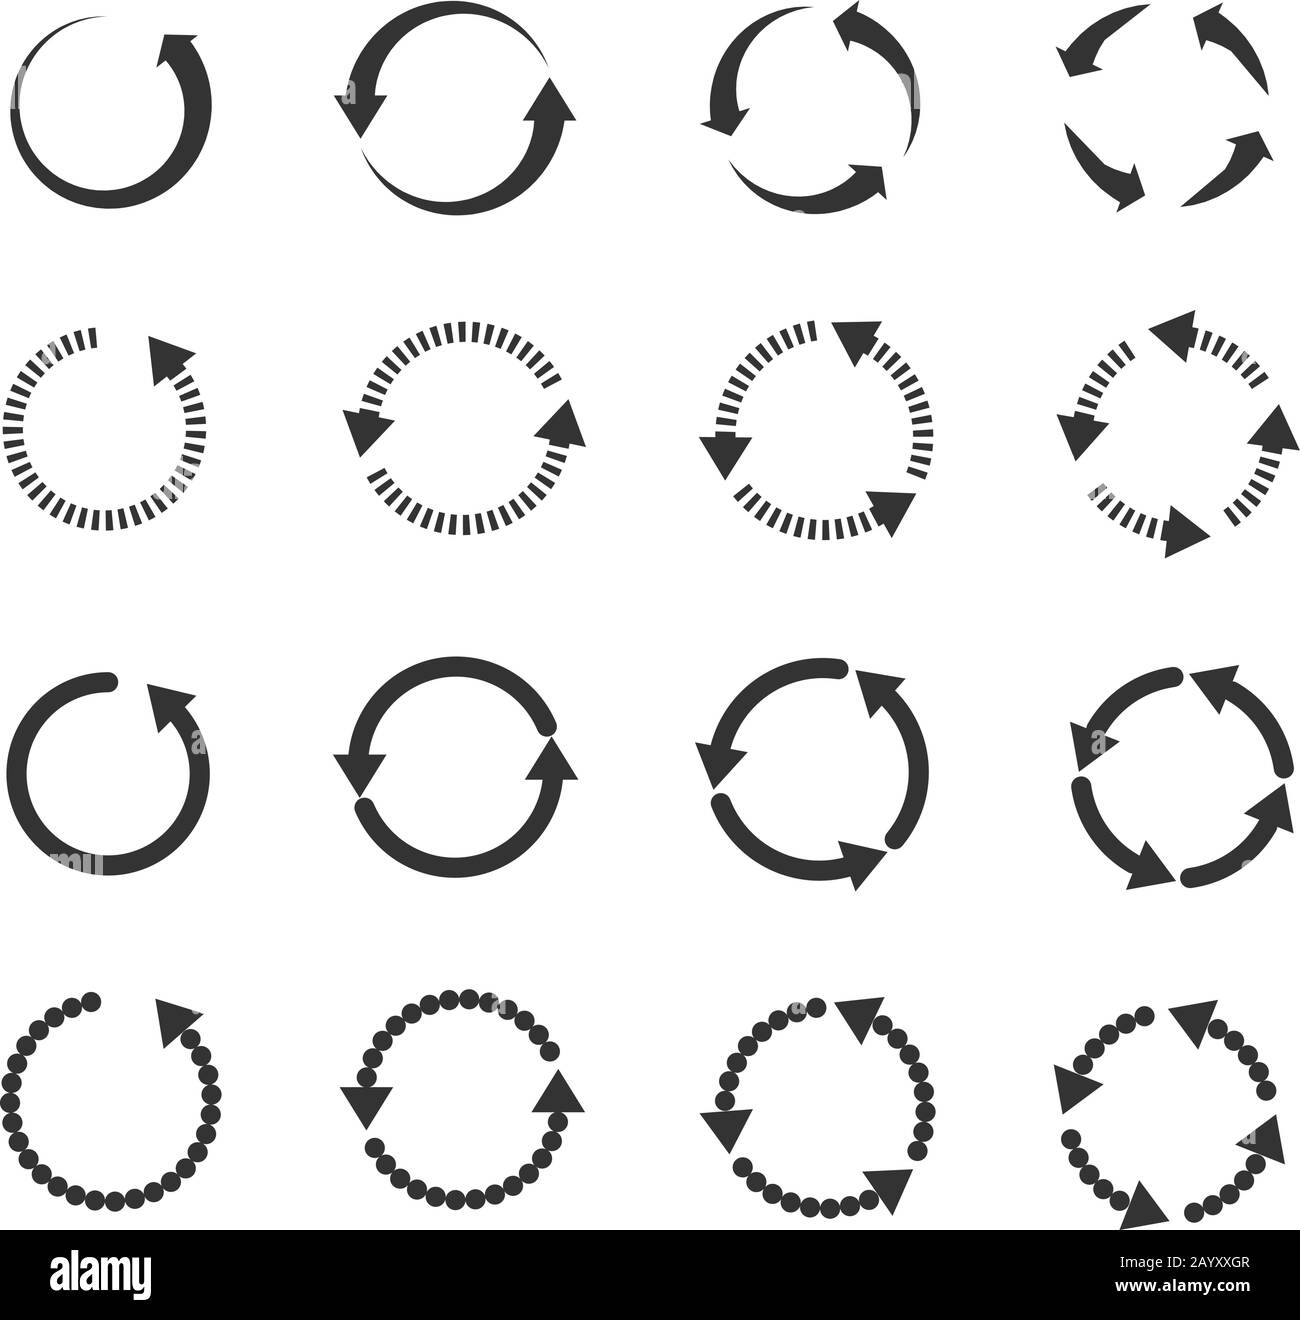 Gruppo di frecce del vettore del loop di rotazione ricaricamento dell'aggiornamento del cerchio. Ricaricare il segnale con il simbolo della freccia e delle frecce di rotazione dell'illustrazione Illustrazione Vettoriale